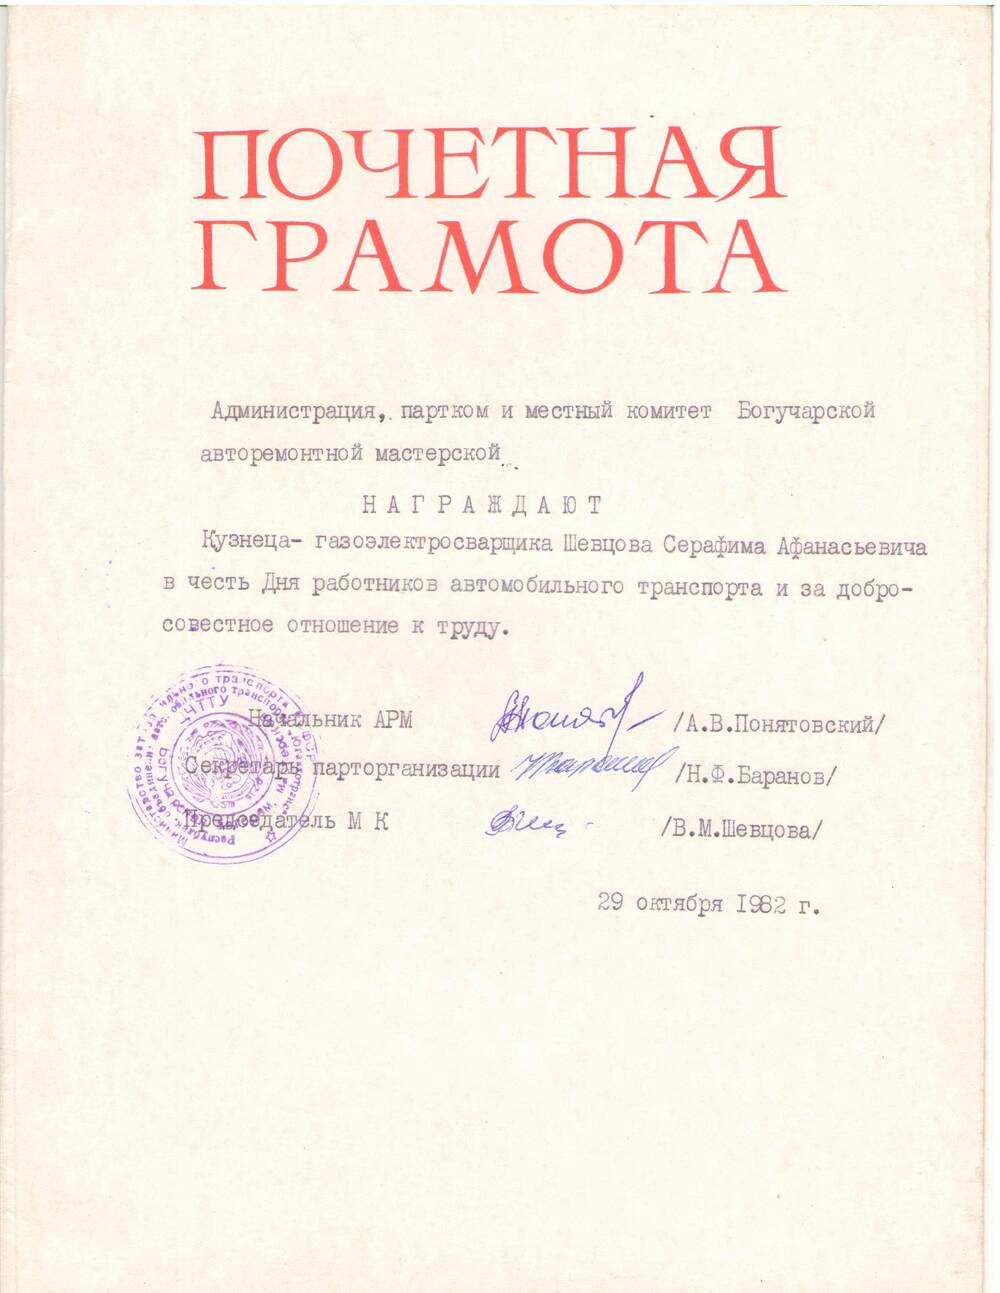 Почетная грамота Шевцову Серафиму Афанасьевичу в честь дня автомобилиста, 29 октября 1982 г.